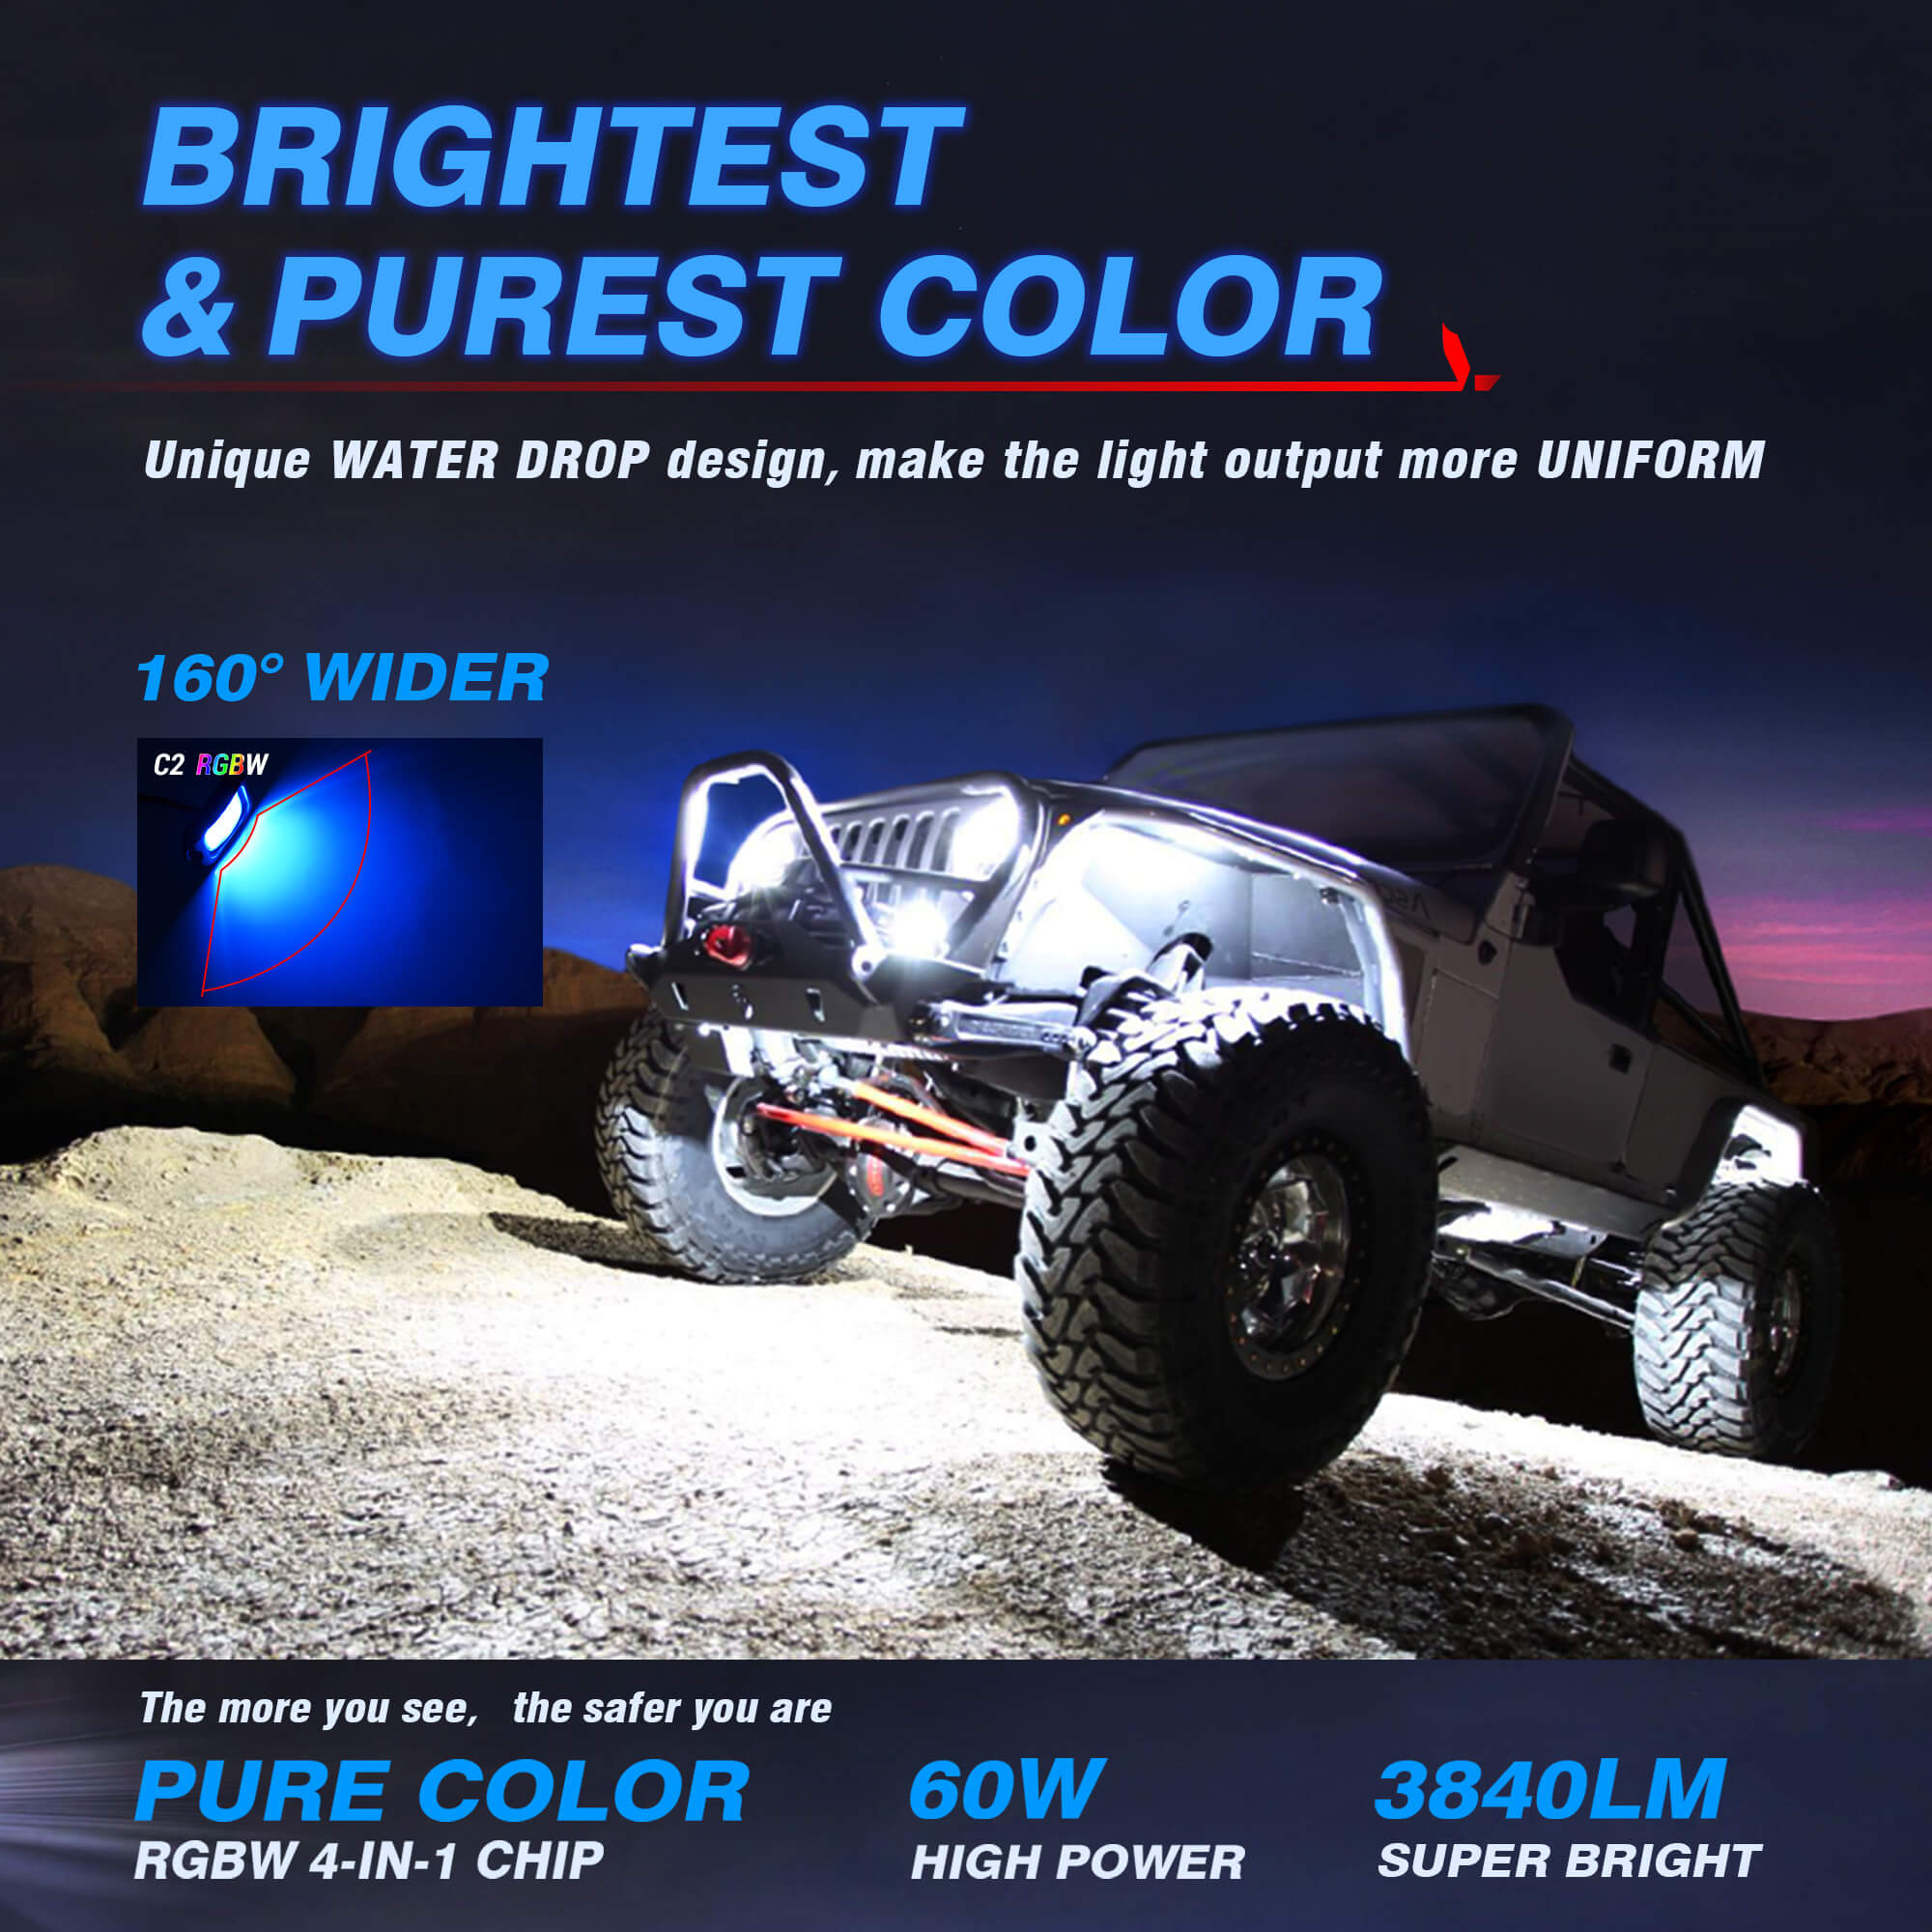 C2 Curved RGBW LED Rock Lights - 12 Pods Multicolor Neon LED Light Kit